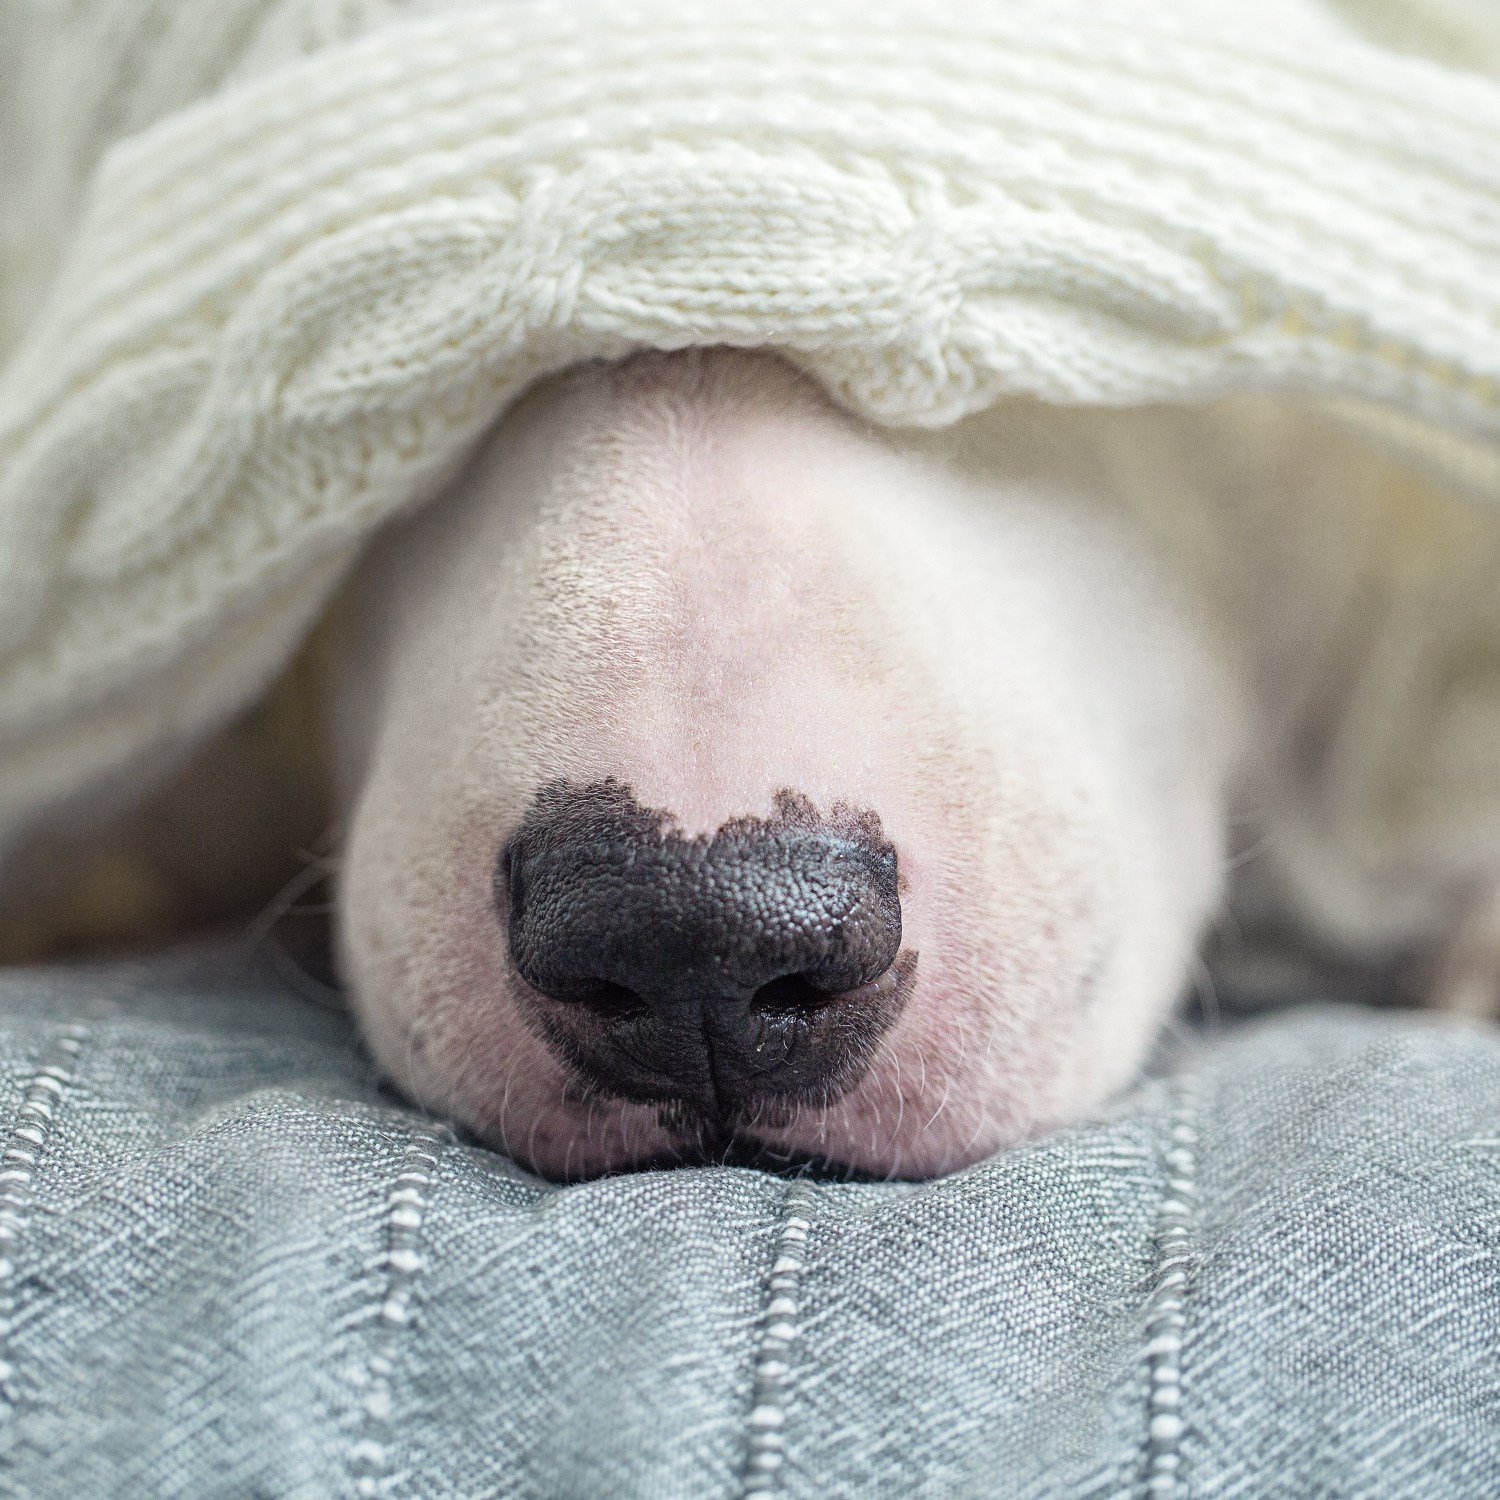 keep-home-safe-winter-storm-dog-hiding-under-blanket